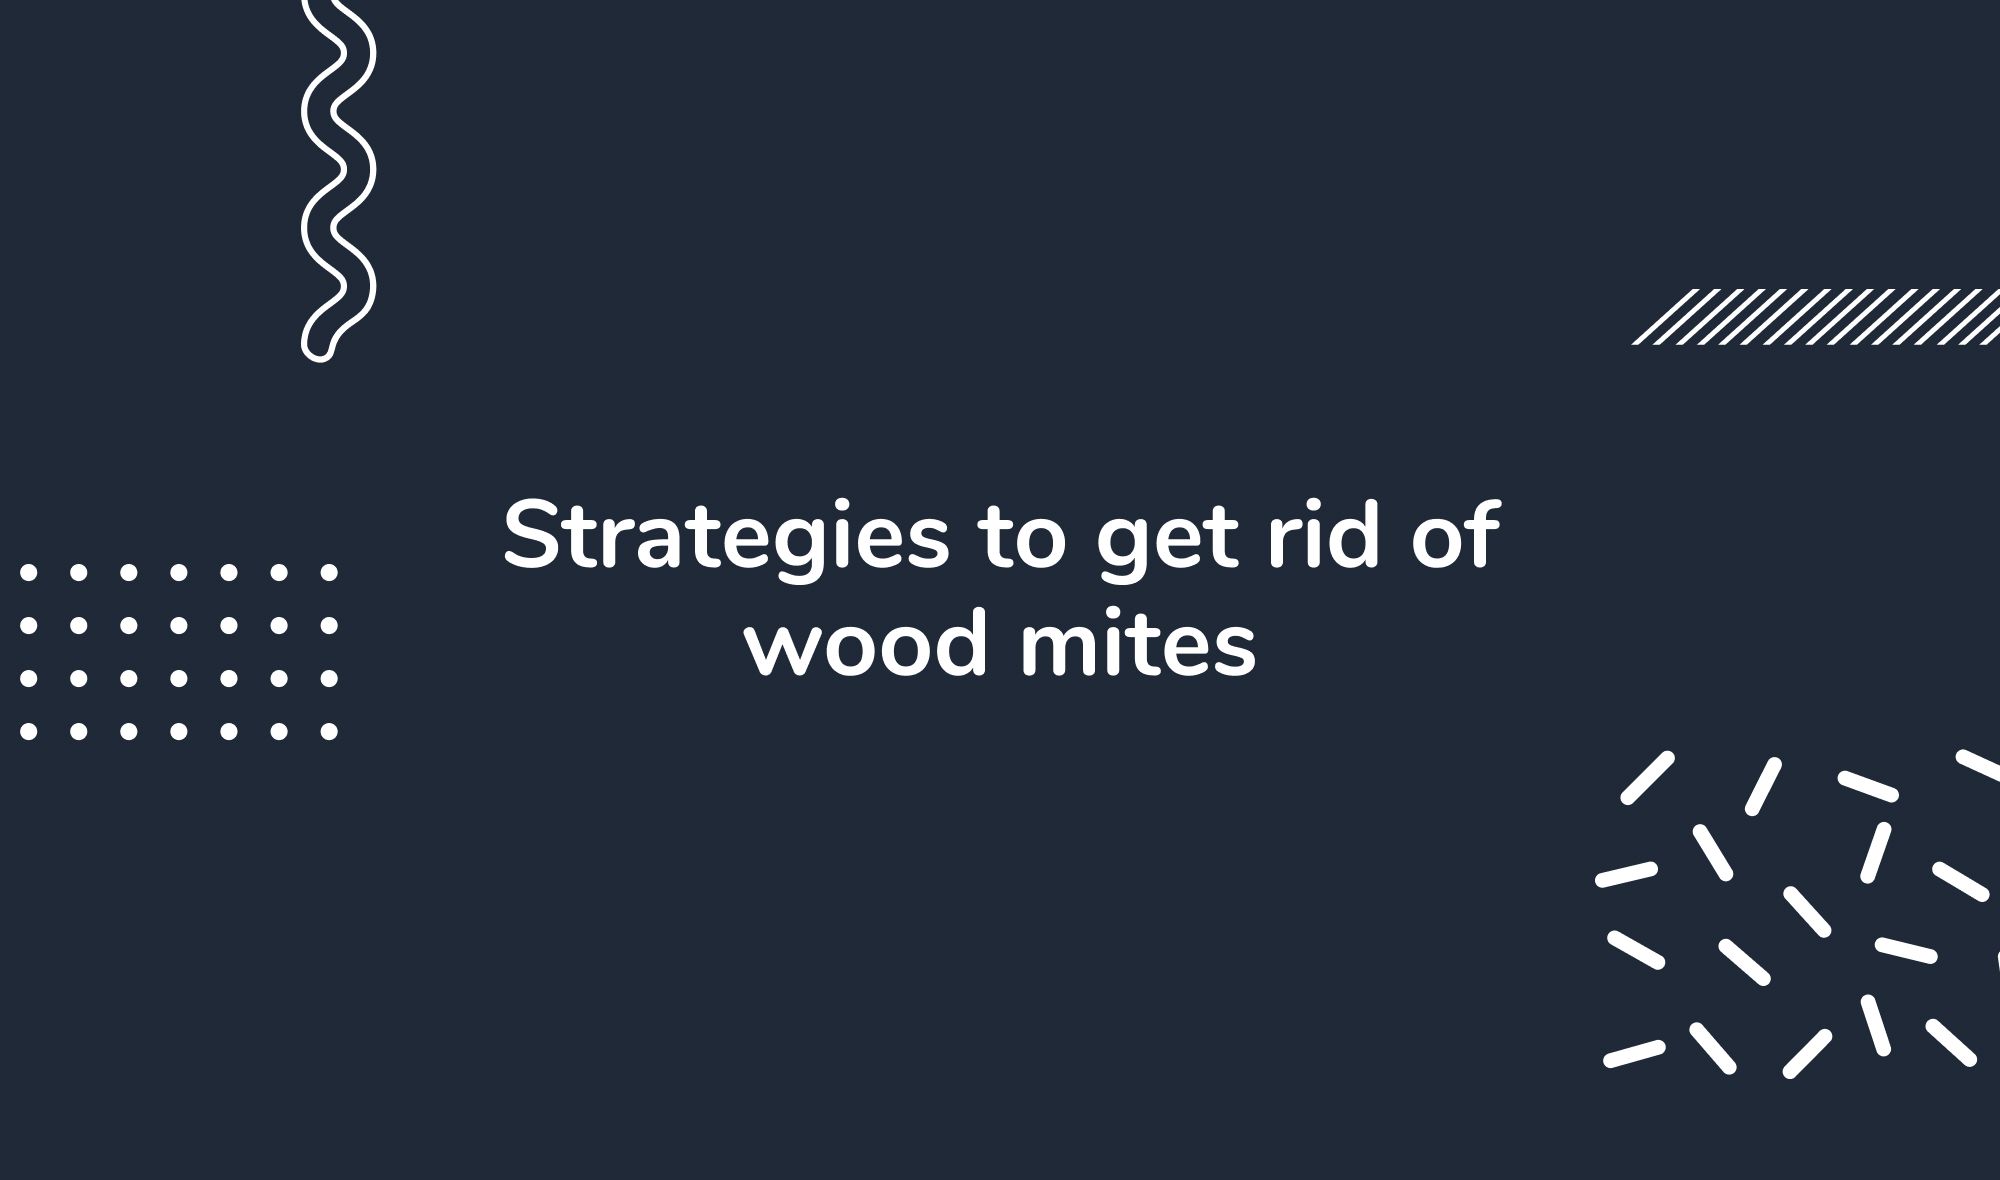 Strategies to get rid of wood mites